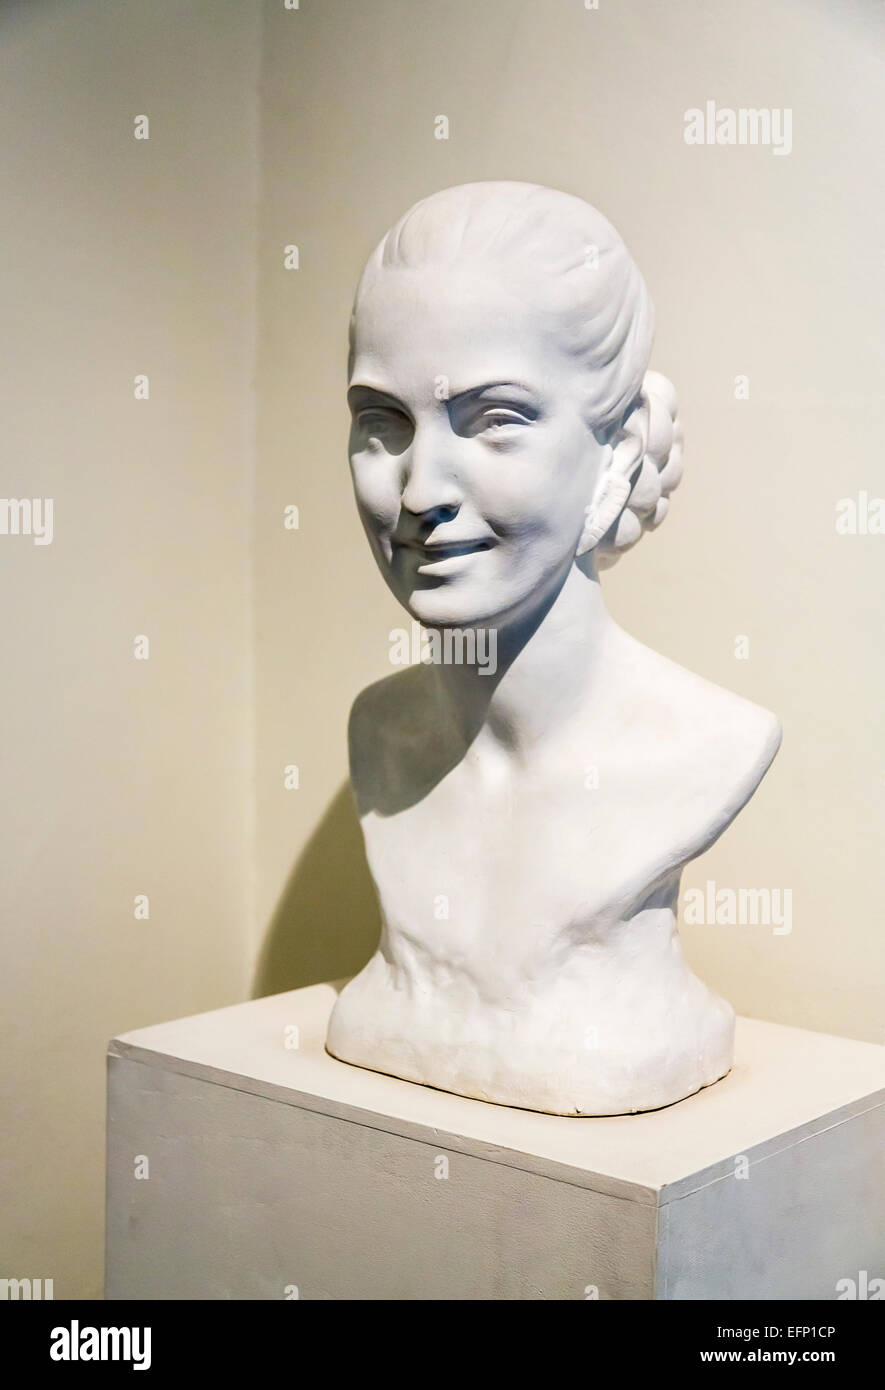 Buste blanc d'Evita Peron, une exposition sur l'affichage dans le musée Evita, Maria Eva Duarte de Peron de la Fondation de l'aide sociale, Buenos Aires, Argentine Banque D'Images